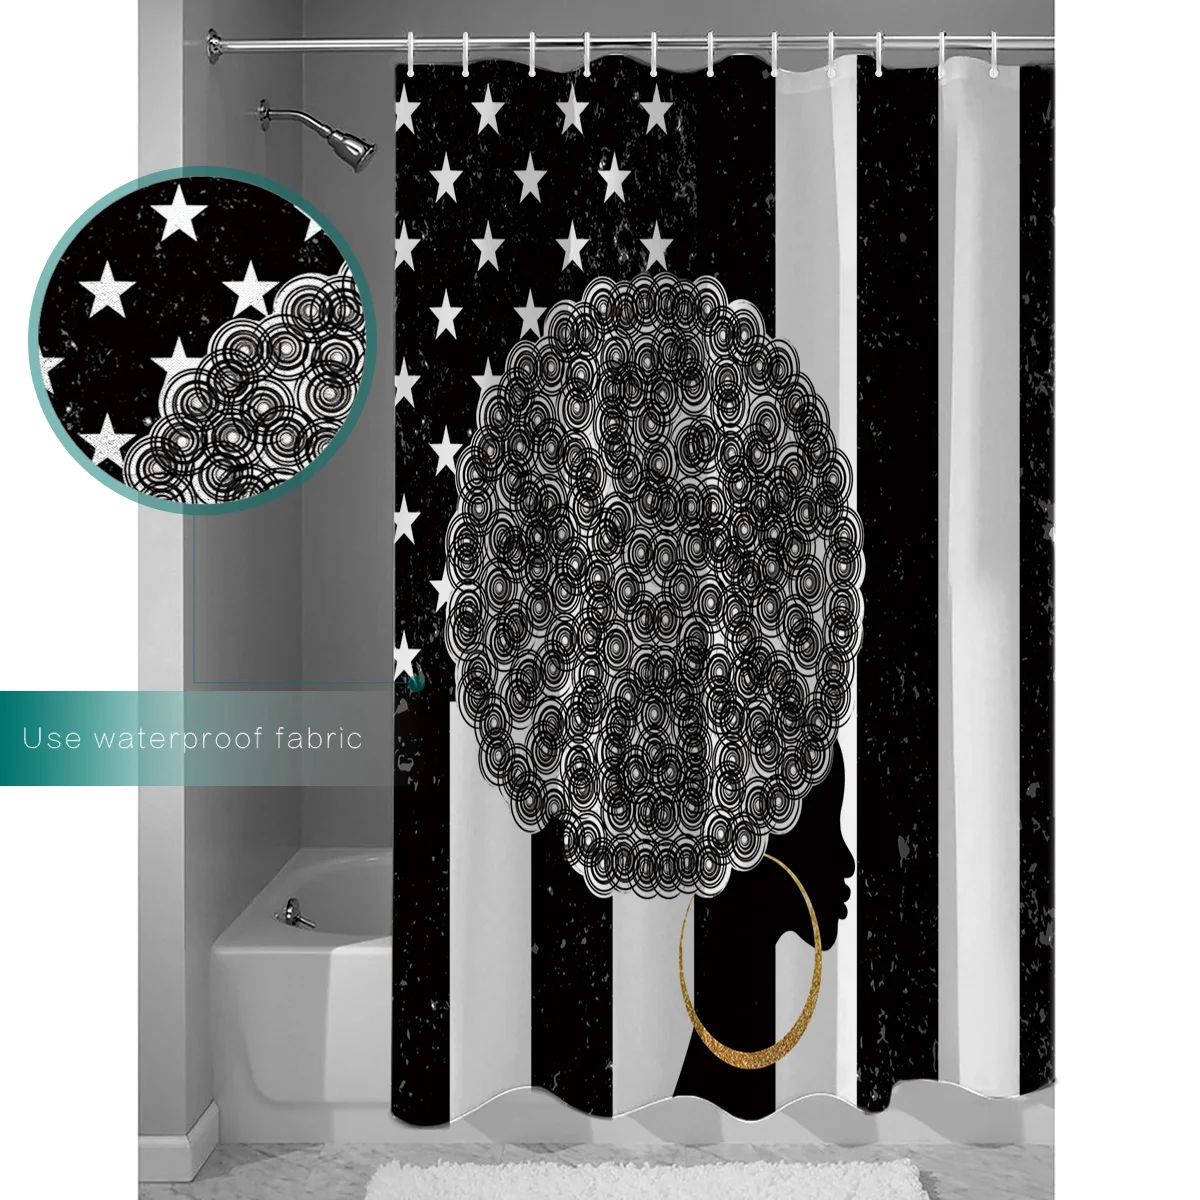 Занавеска для душа из водонепроницаемой полиэфирной ткани занавеска для душа Ретро Американский Флаг Фон африканская черная женщина